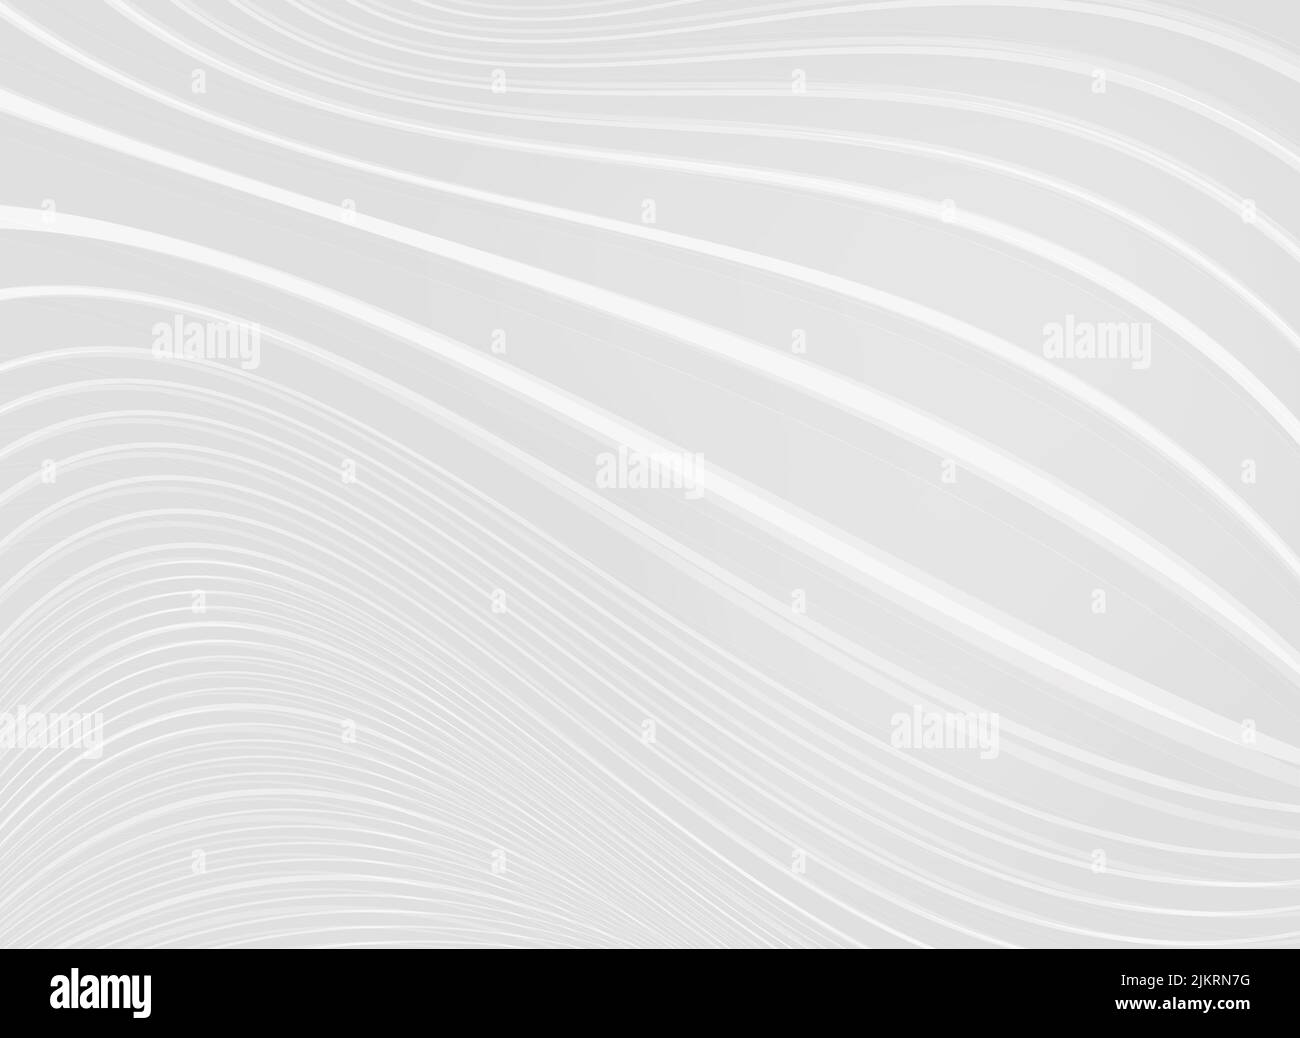 Diseño abstracto moderno futurista de fondo gris claro - ilustración de archivo Foto de stock